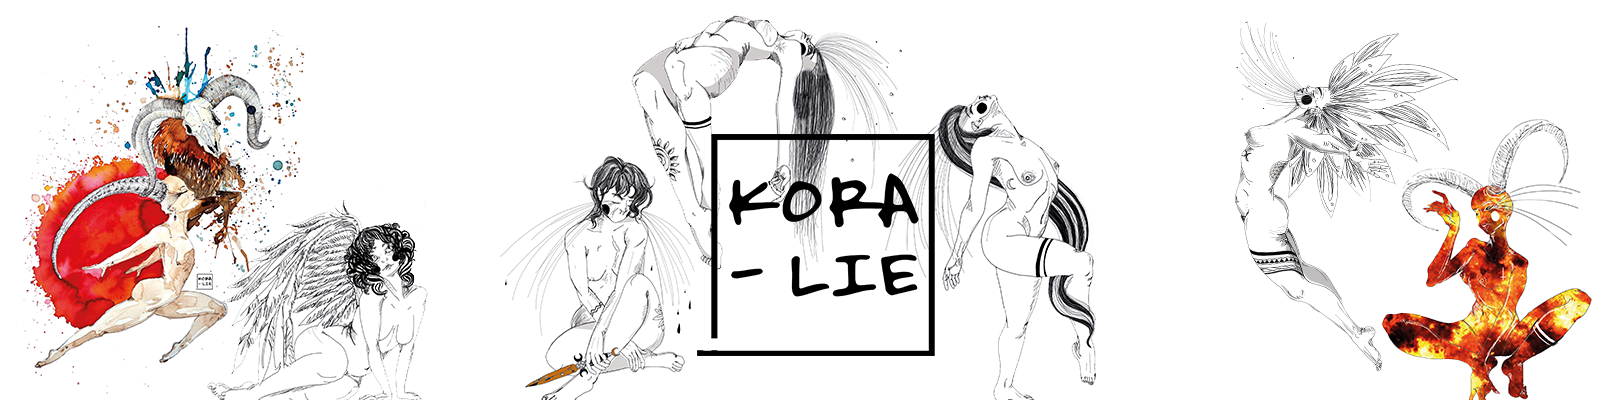 Ilustraciones sobre la Mujer y su Fuerza Interior de la Artista Kora-Lie